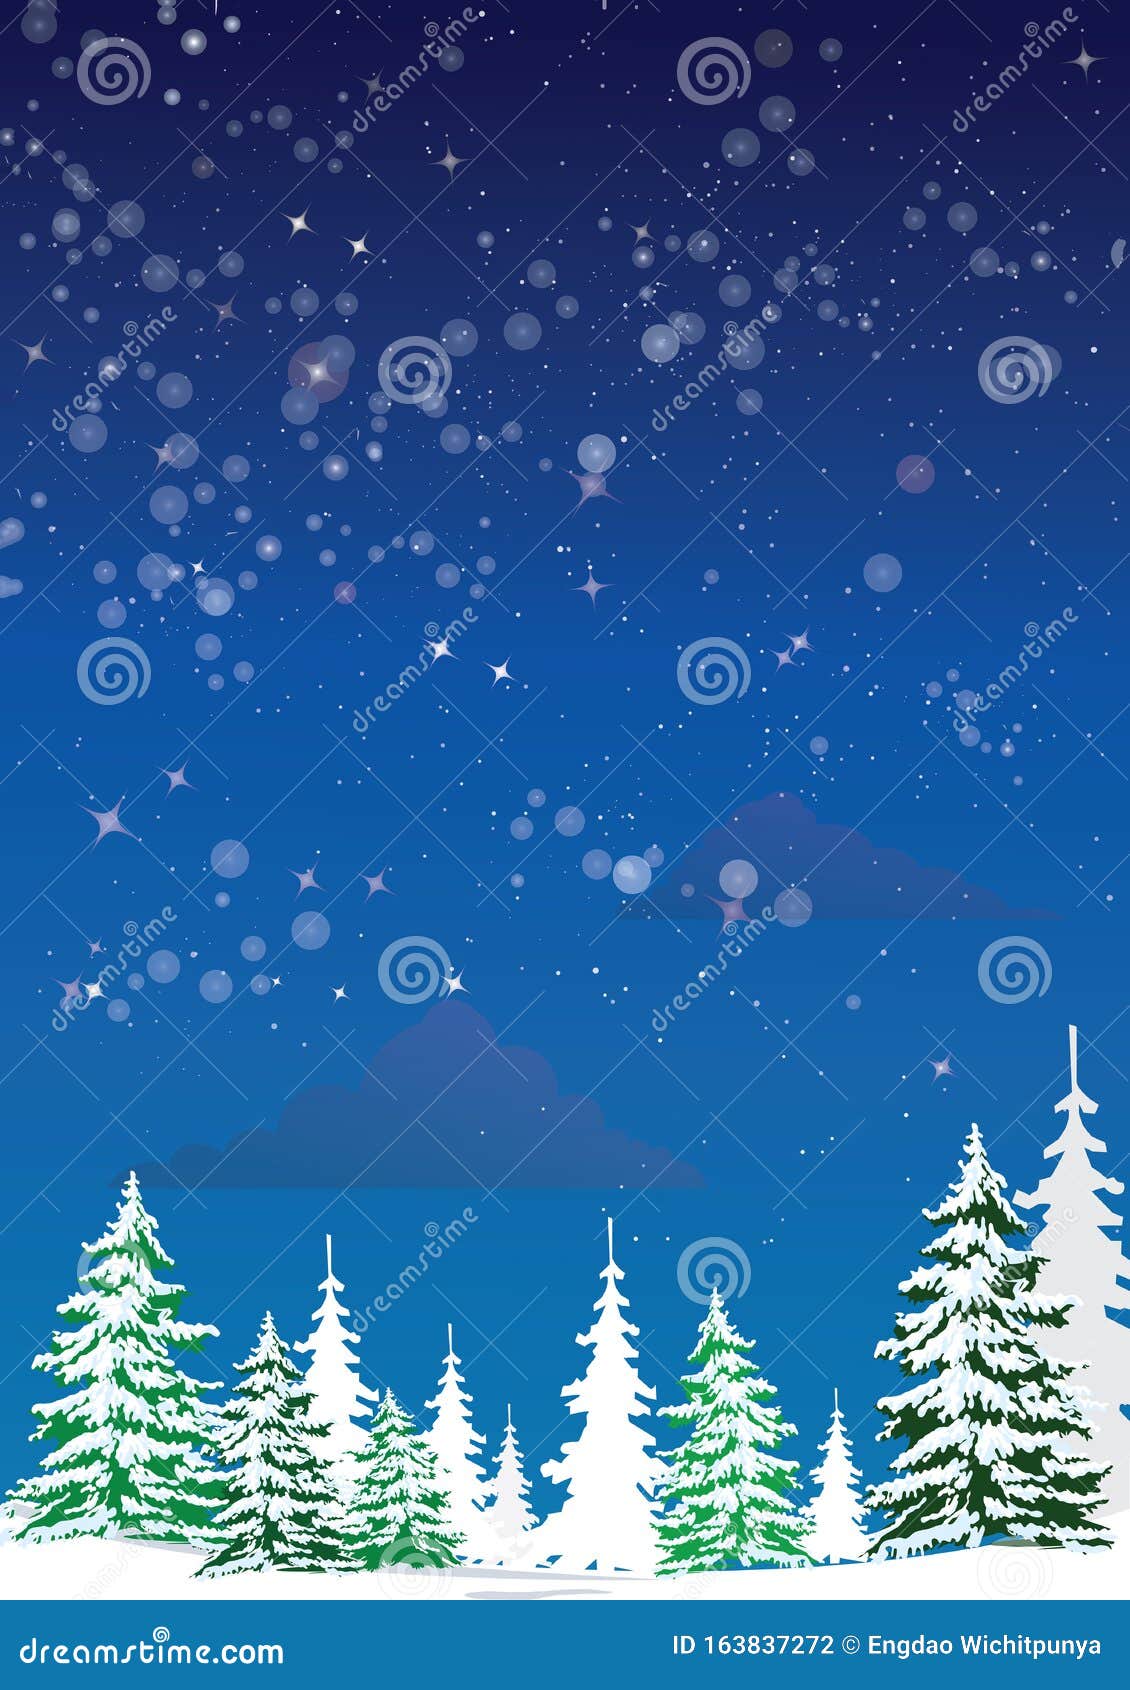 松树林景观垂直 夜间剪影圣诞树森林杉木自然雪冬背景 矢量图库存例证 插画包括有特写镜头 查出